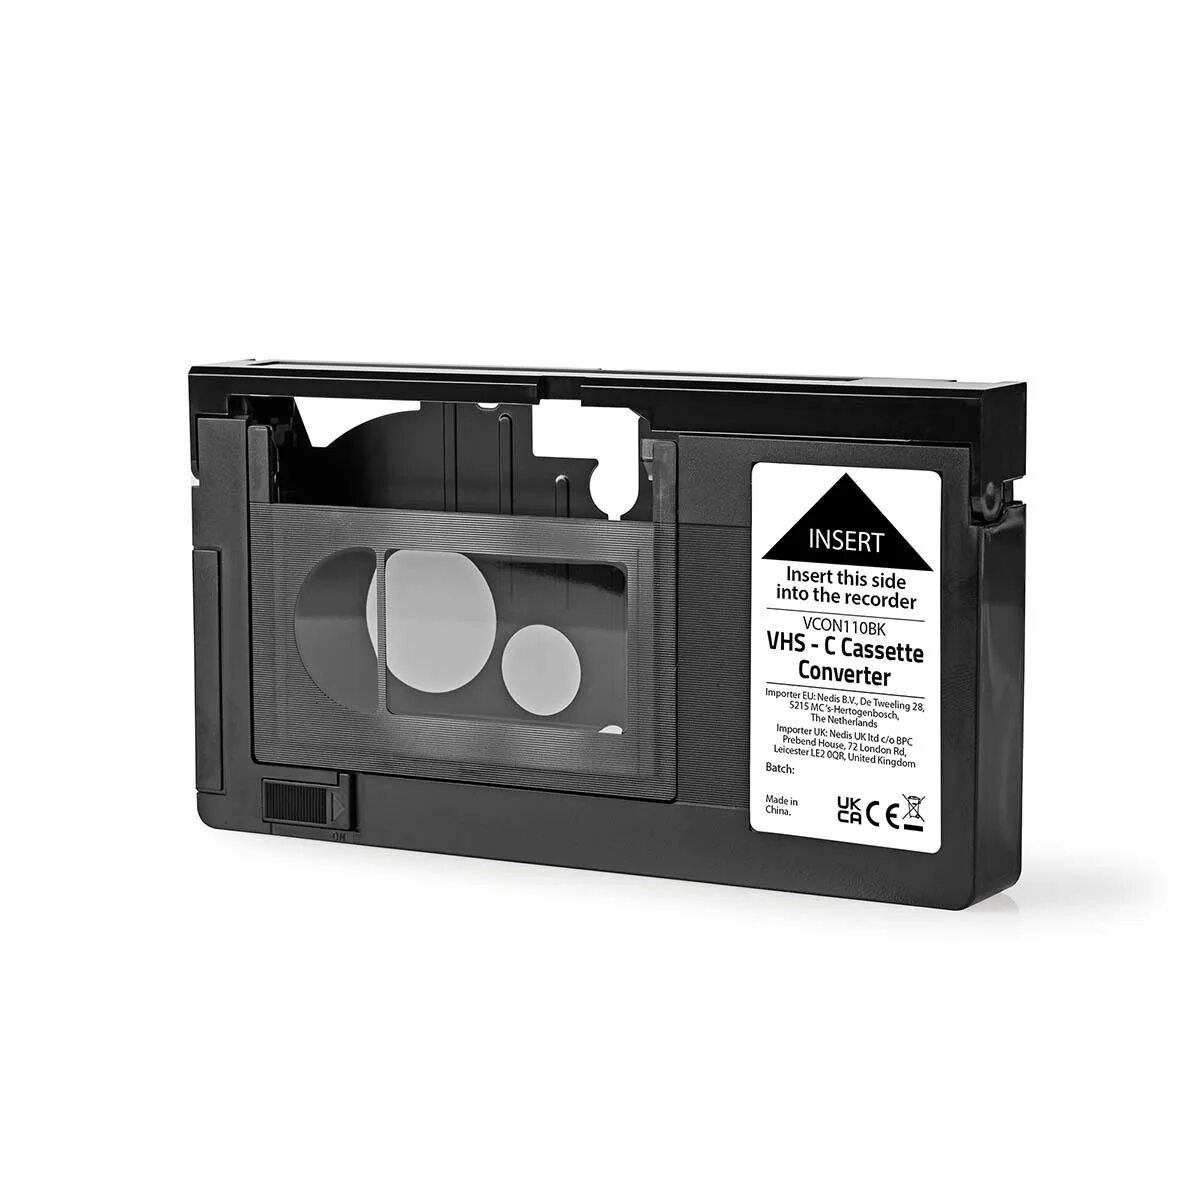 Кассета dv. Адаптер MINIDV VHS-C. Hi8 кассета адаптер. Кассеты Video 8 Mini DV VHS-C. Видеокассеты VHS Hi 8 Mini DV.